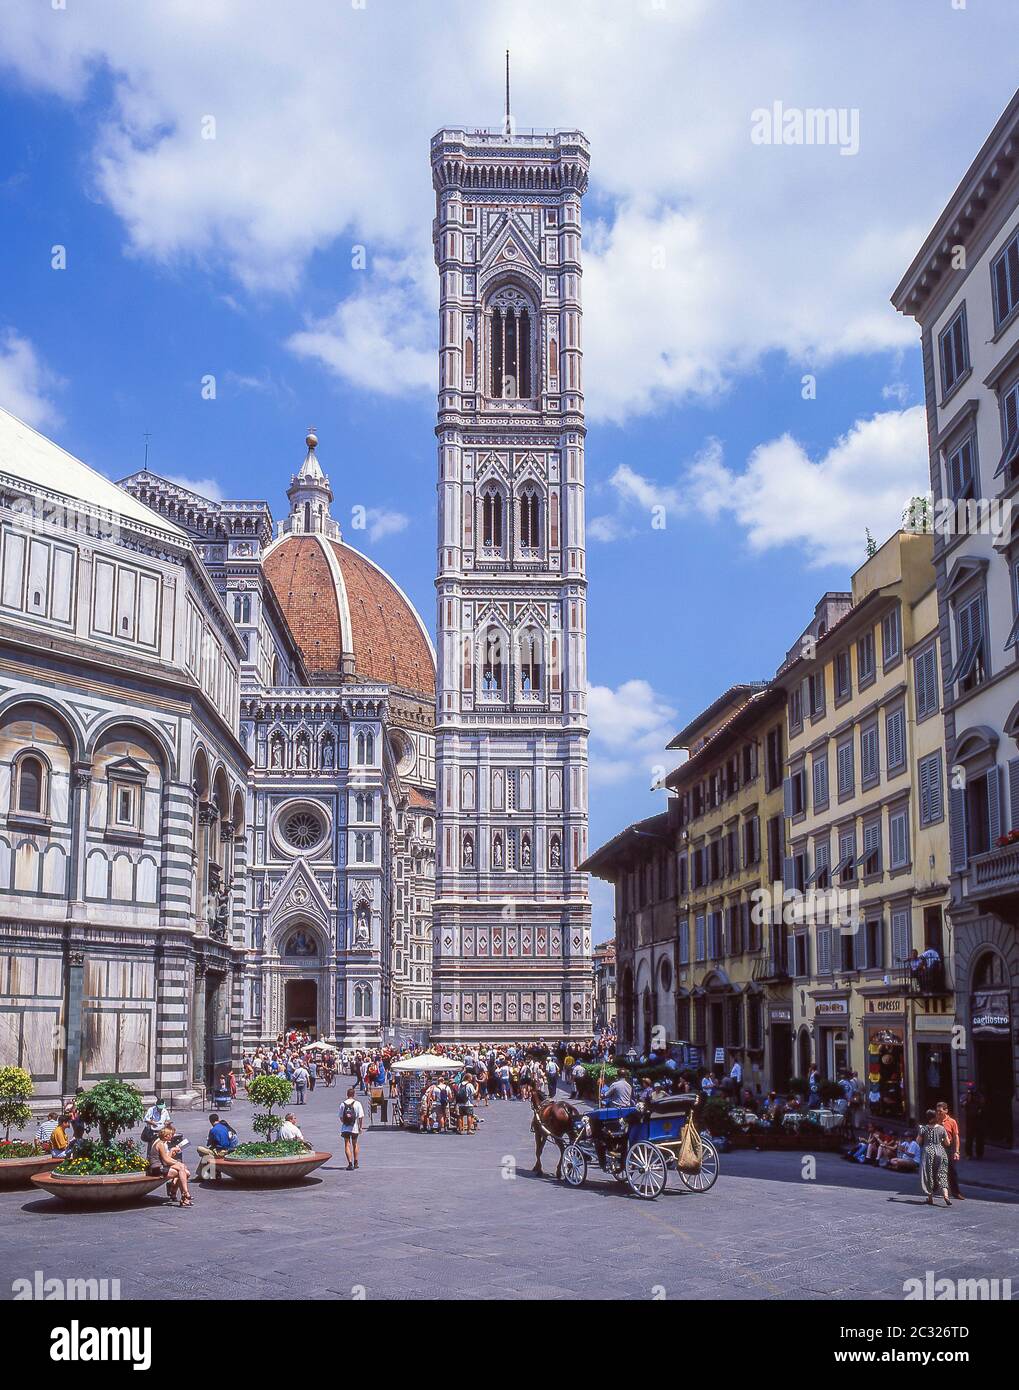 Giotto's Bell Tower (Campanile), Cattedrale di Santa Maria del Fiore cathedral (Duomo), Piazza del Duomo, Florence (Firenze), Tuscany Region, Italy Stock Photo